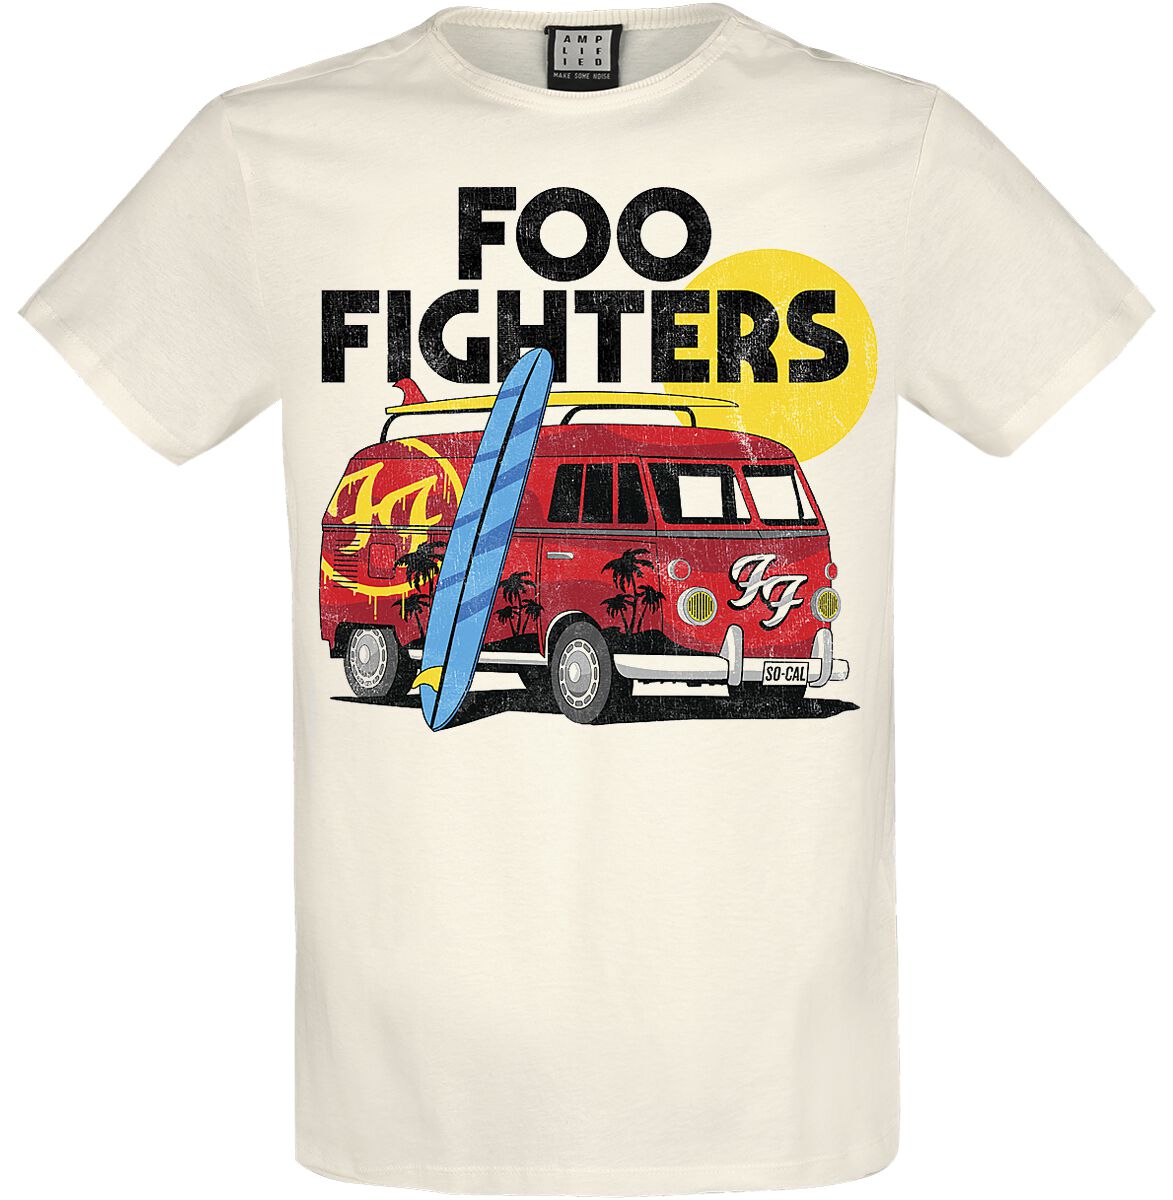 Foo Fighters T-Shirt - Amplified Collection - Camper Van - XS bis 3XL - für Männer - Größe XS - altweiß  - Lizenziertes Merchandise!